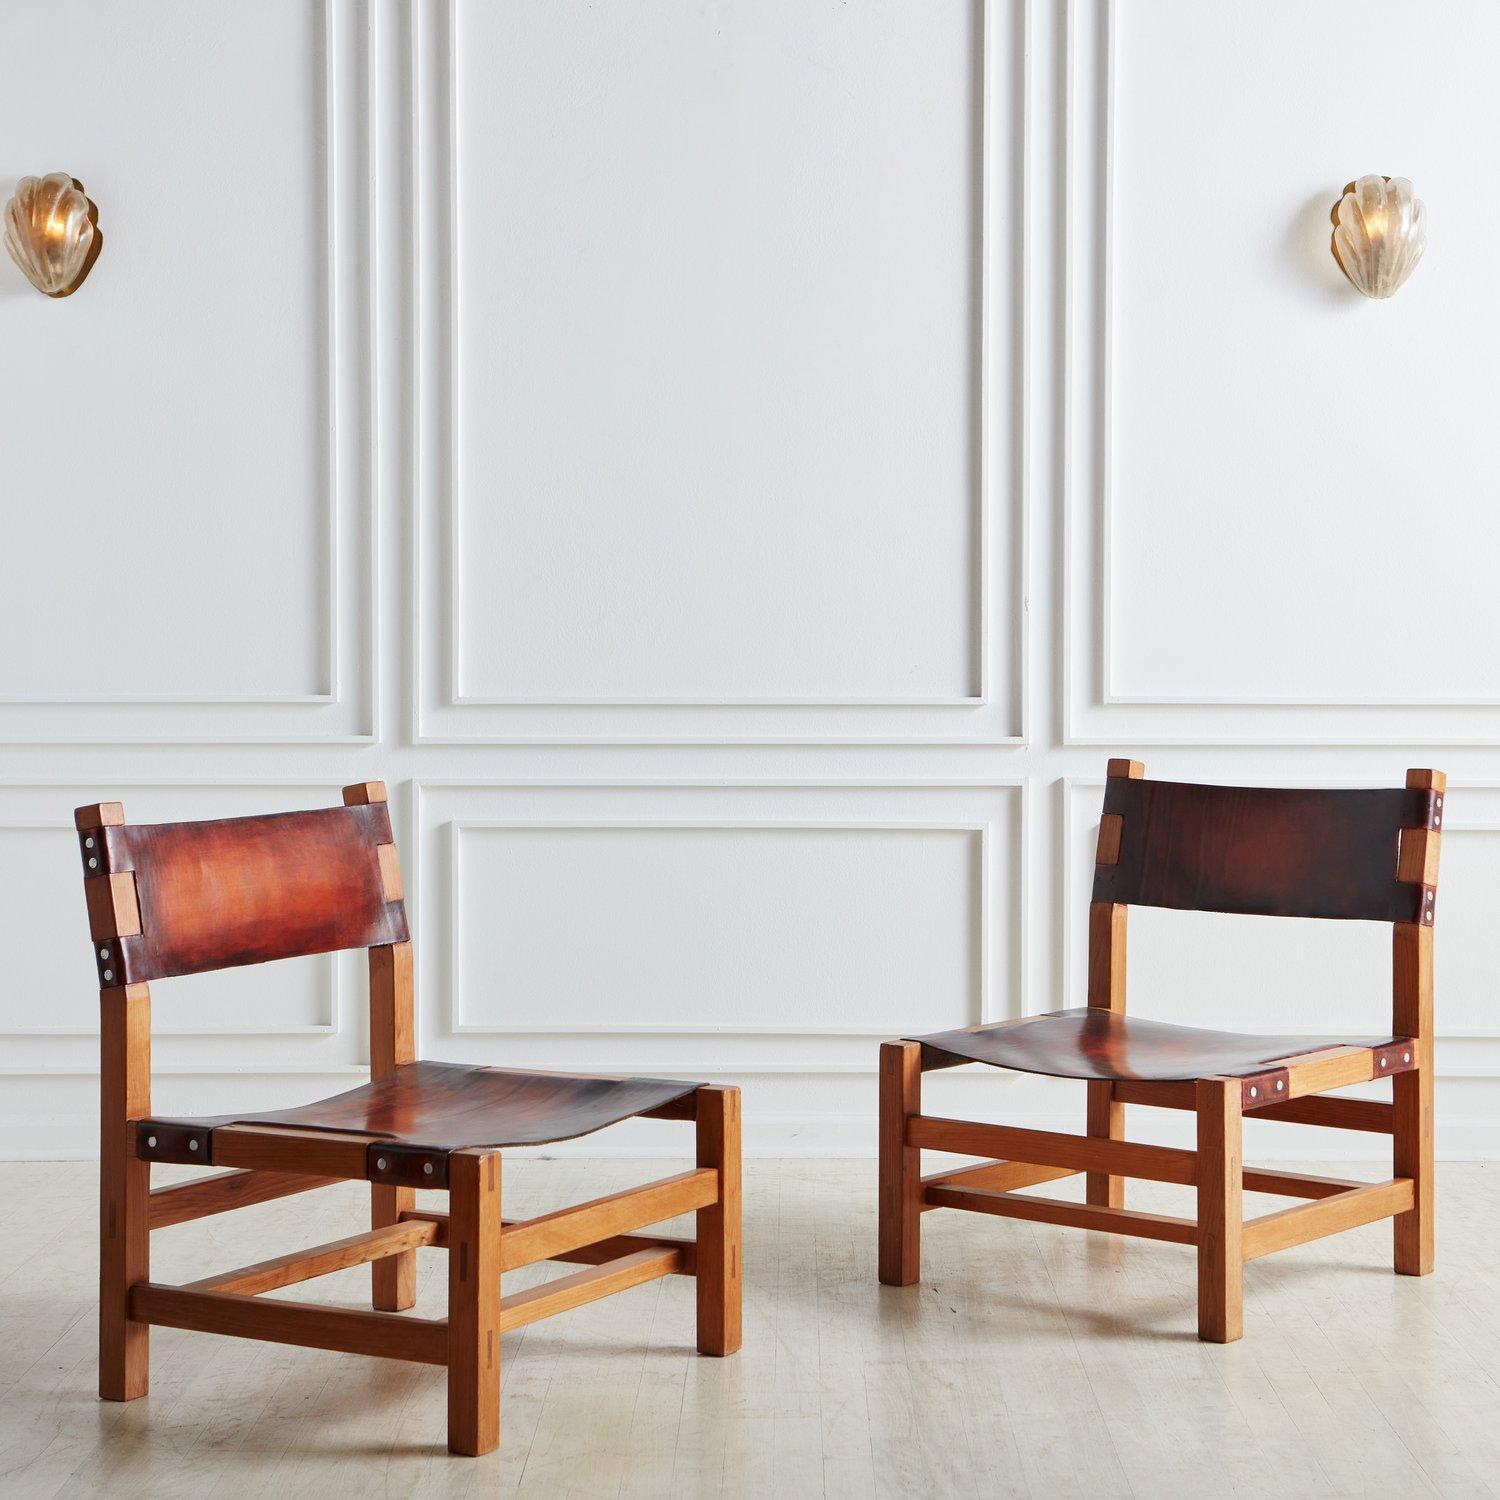 Ein Paar französischer Sessel für den Kamin, zugeschrieben Maison Regain. Die Stühle haben ein Gestell aus Ulmenholz, das mit einer schönen Holzkonstruktion versehen ist, und verfügen über auffallend patinierte Ledersitze und -rückenlehnen. Wir